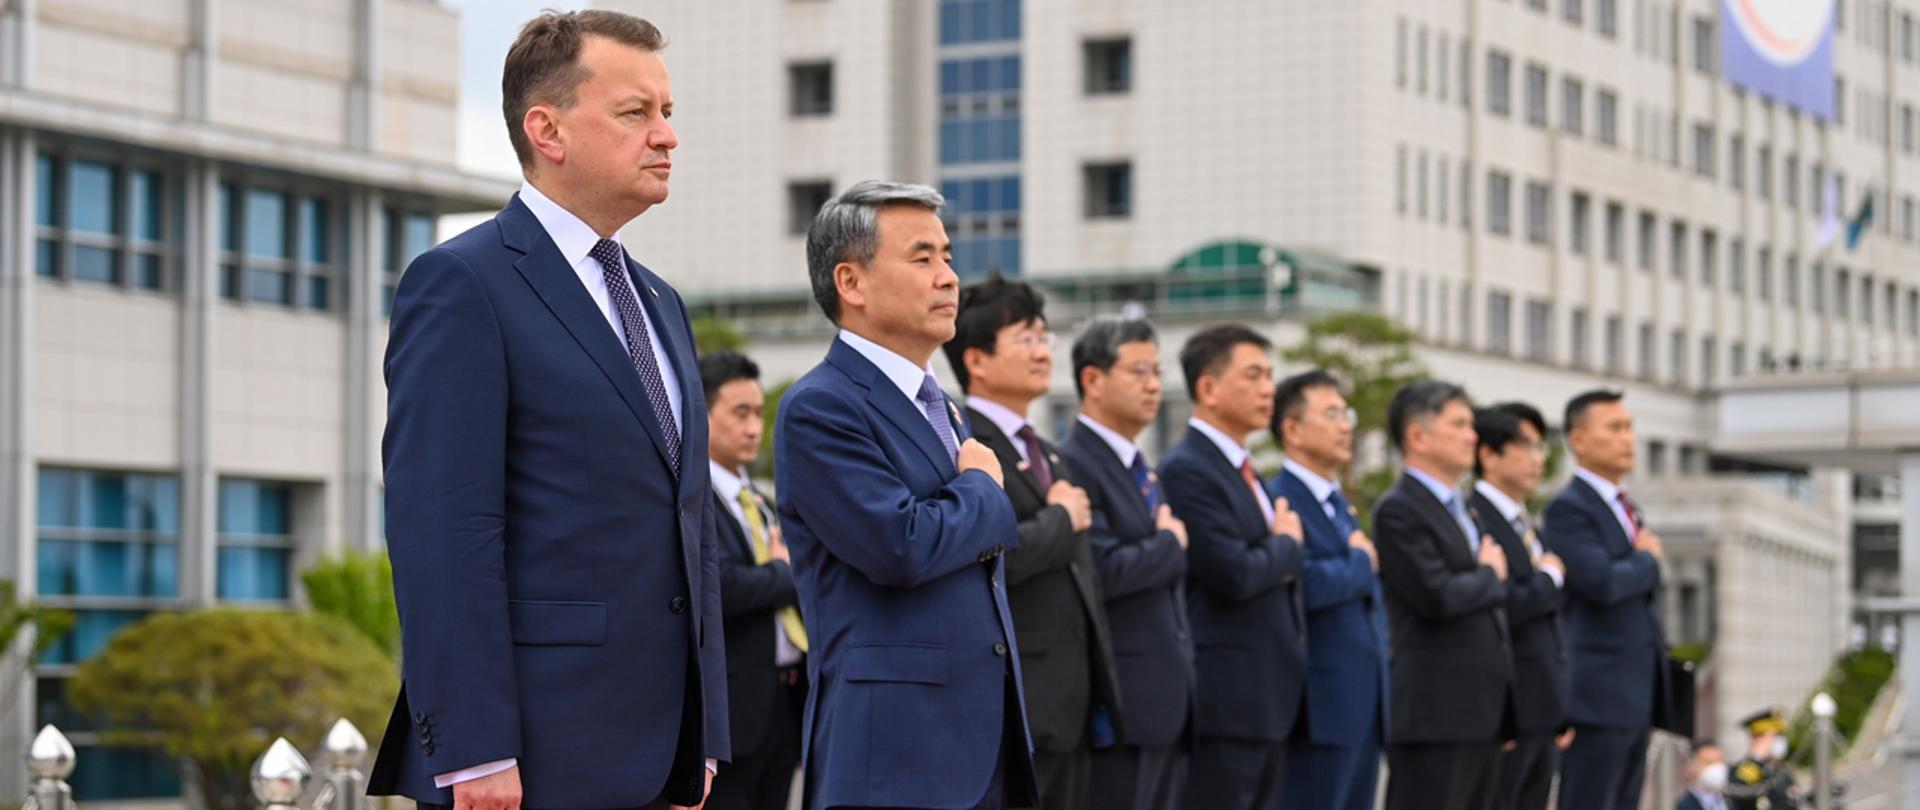 W dniach 29 maja – 1 czerwca, Mariusz Błaszczak, minister obrony narodowej przebywał z wizytą w Korei Południowej.
